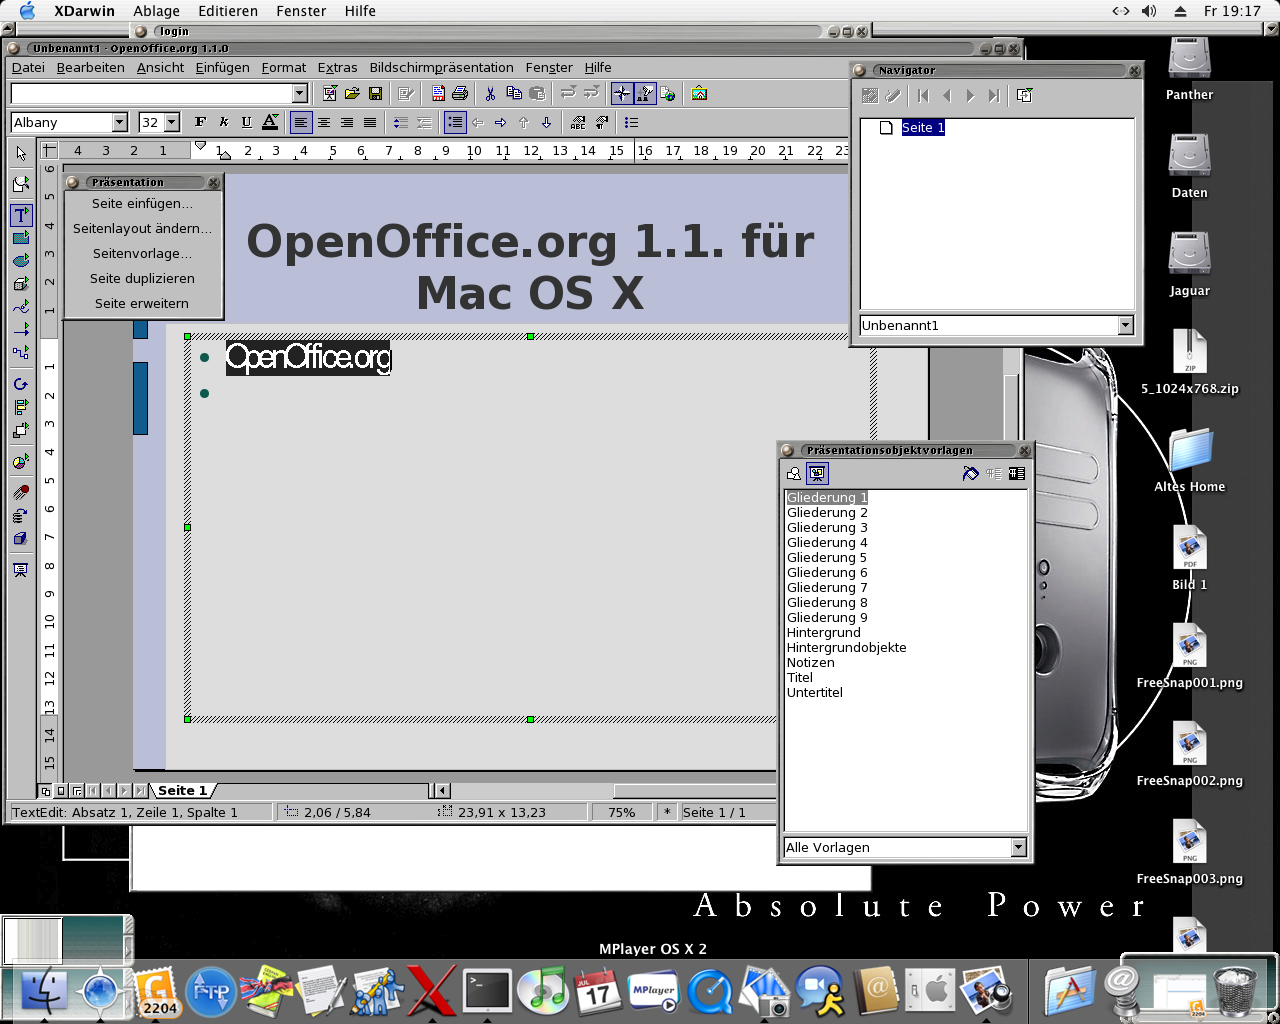 openoffice 4.0.1 for mac